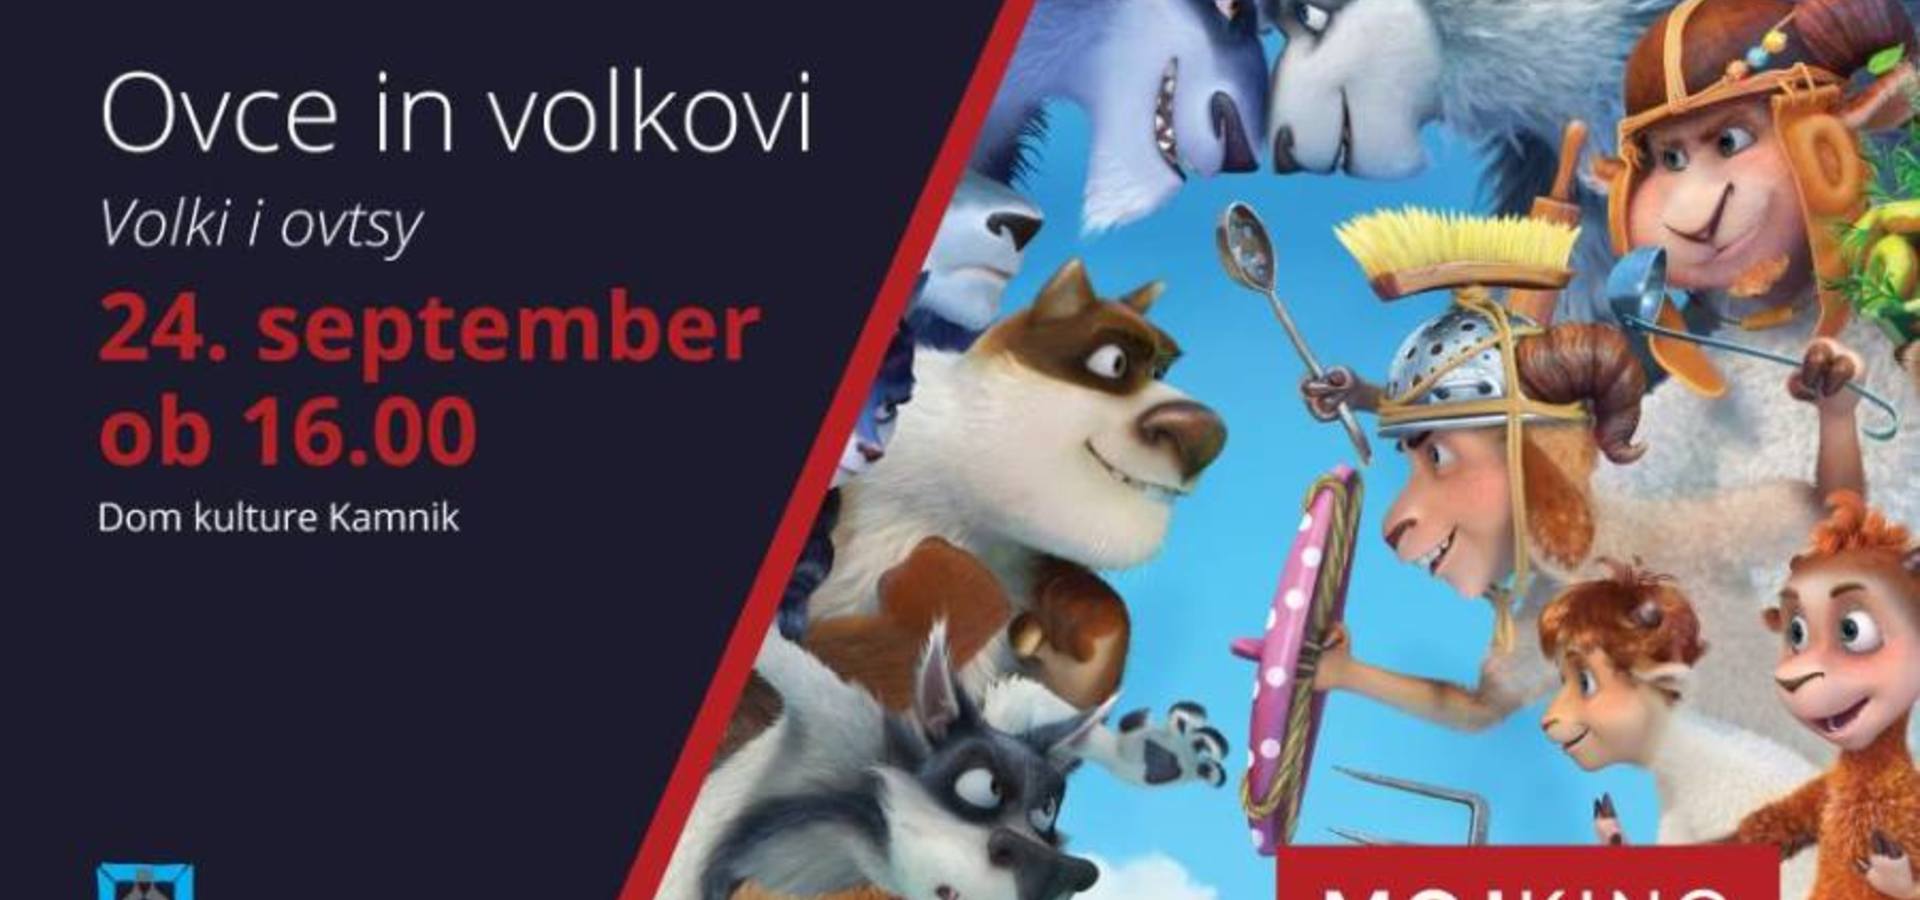 Moj kino: Ovce in volkovi - sinhronizirano v slovenščino!